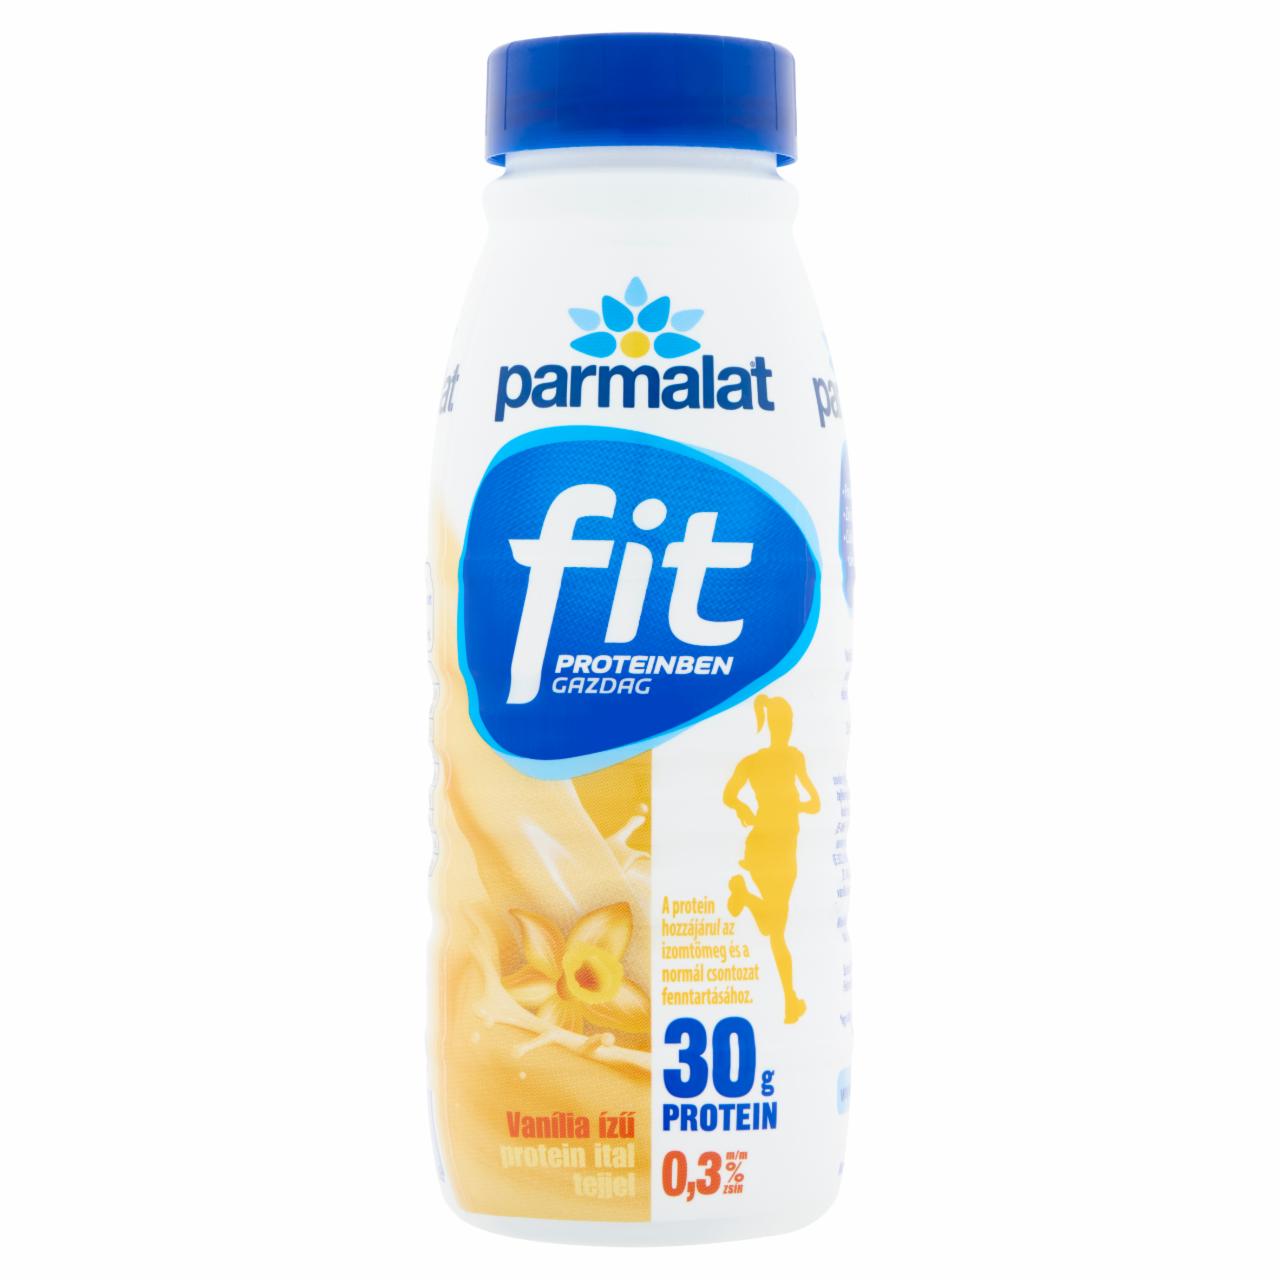 Képek - Parmalat Fit vanília ízű protein ital tejjel 0,5 l